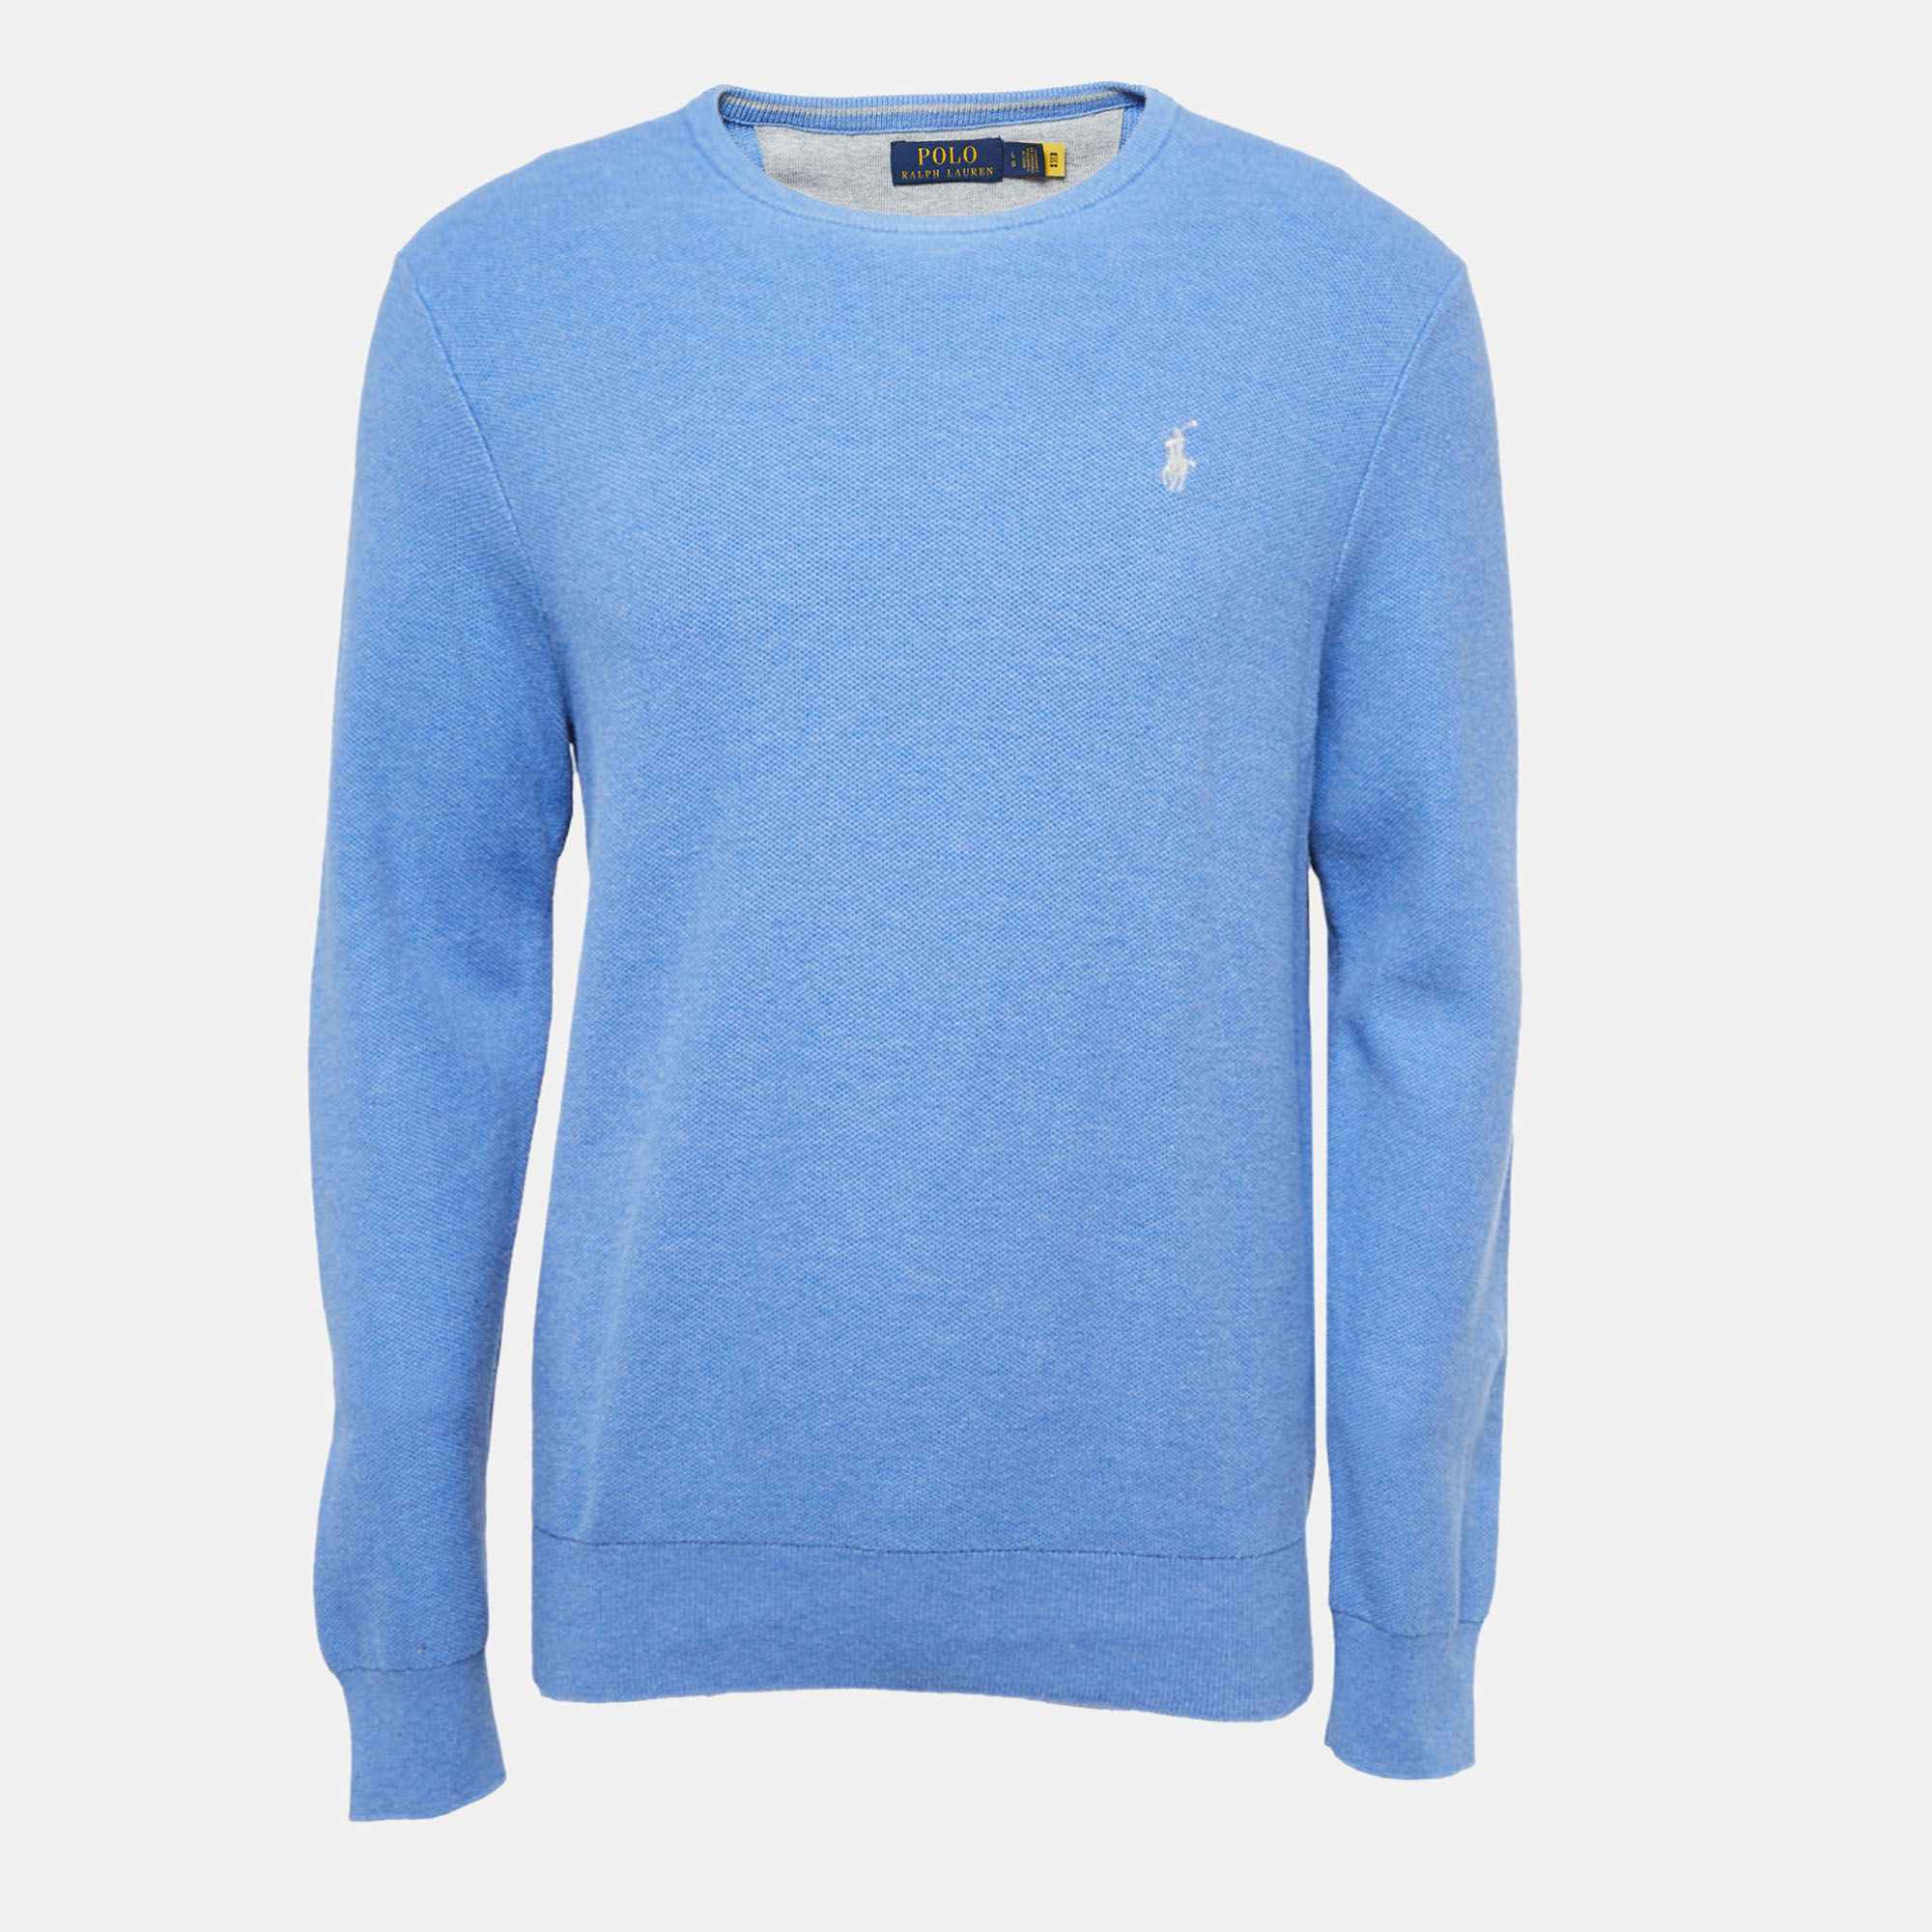 Pre-owned Polo Ralph Lauren Light Blue Cotton Sweatshirt L